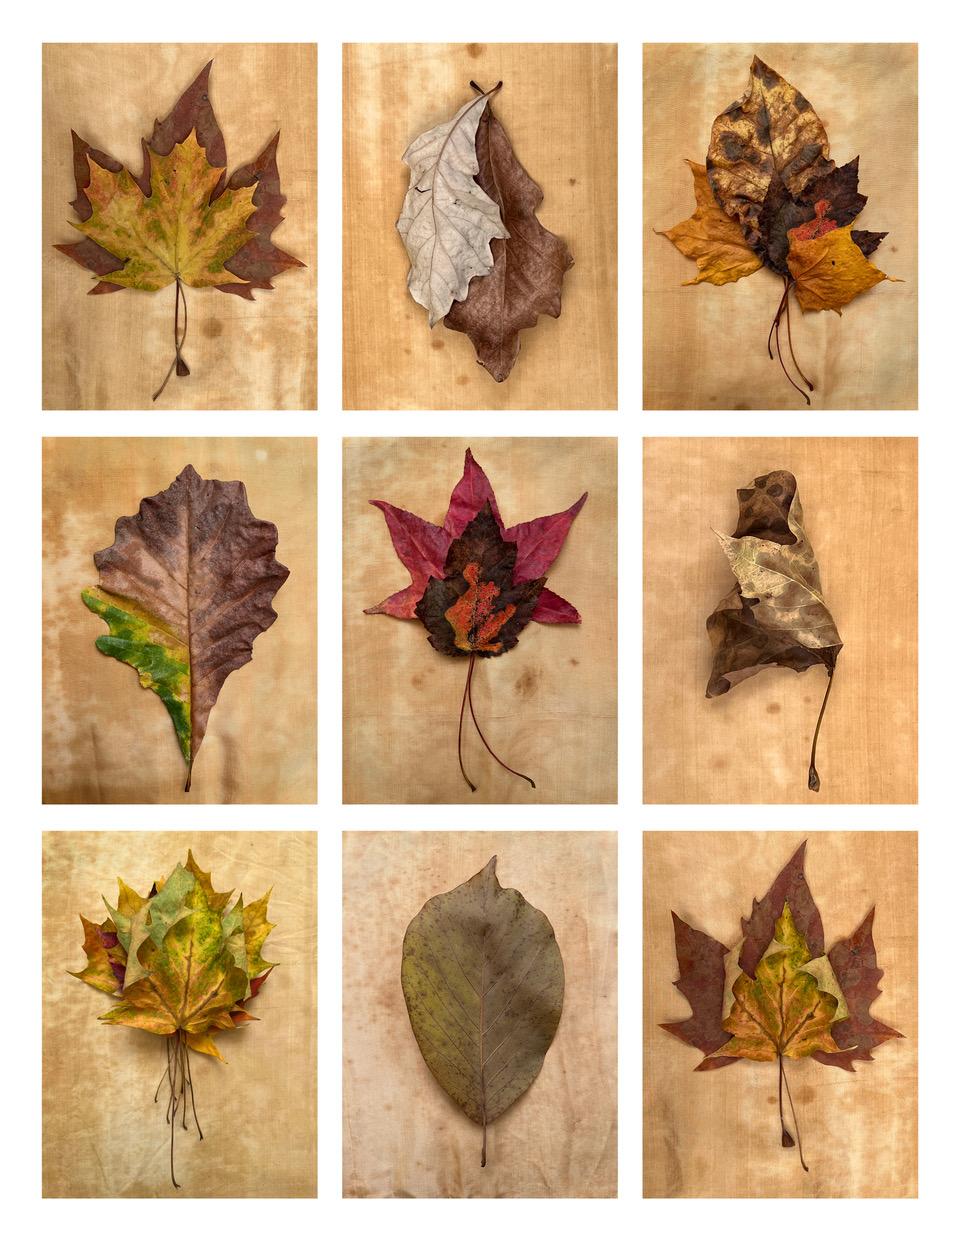 Nine Leaves: Gitter mit Blattfotografien von Natur-Stillleben in Gold, Rot und Grün